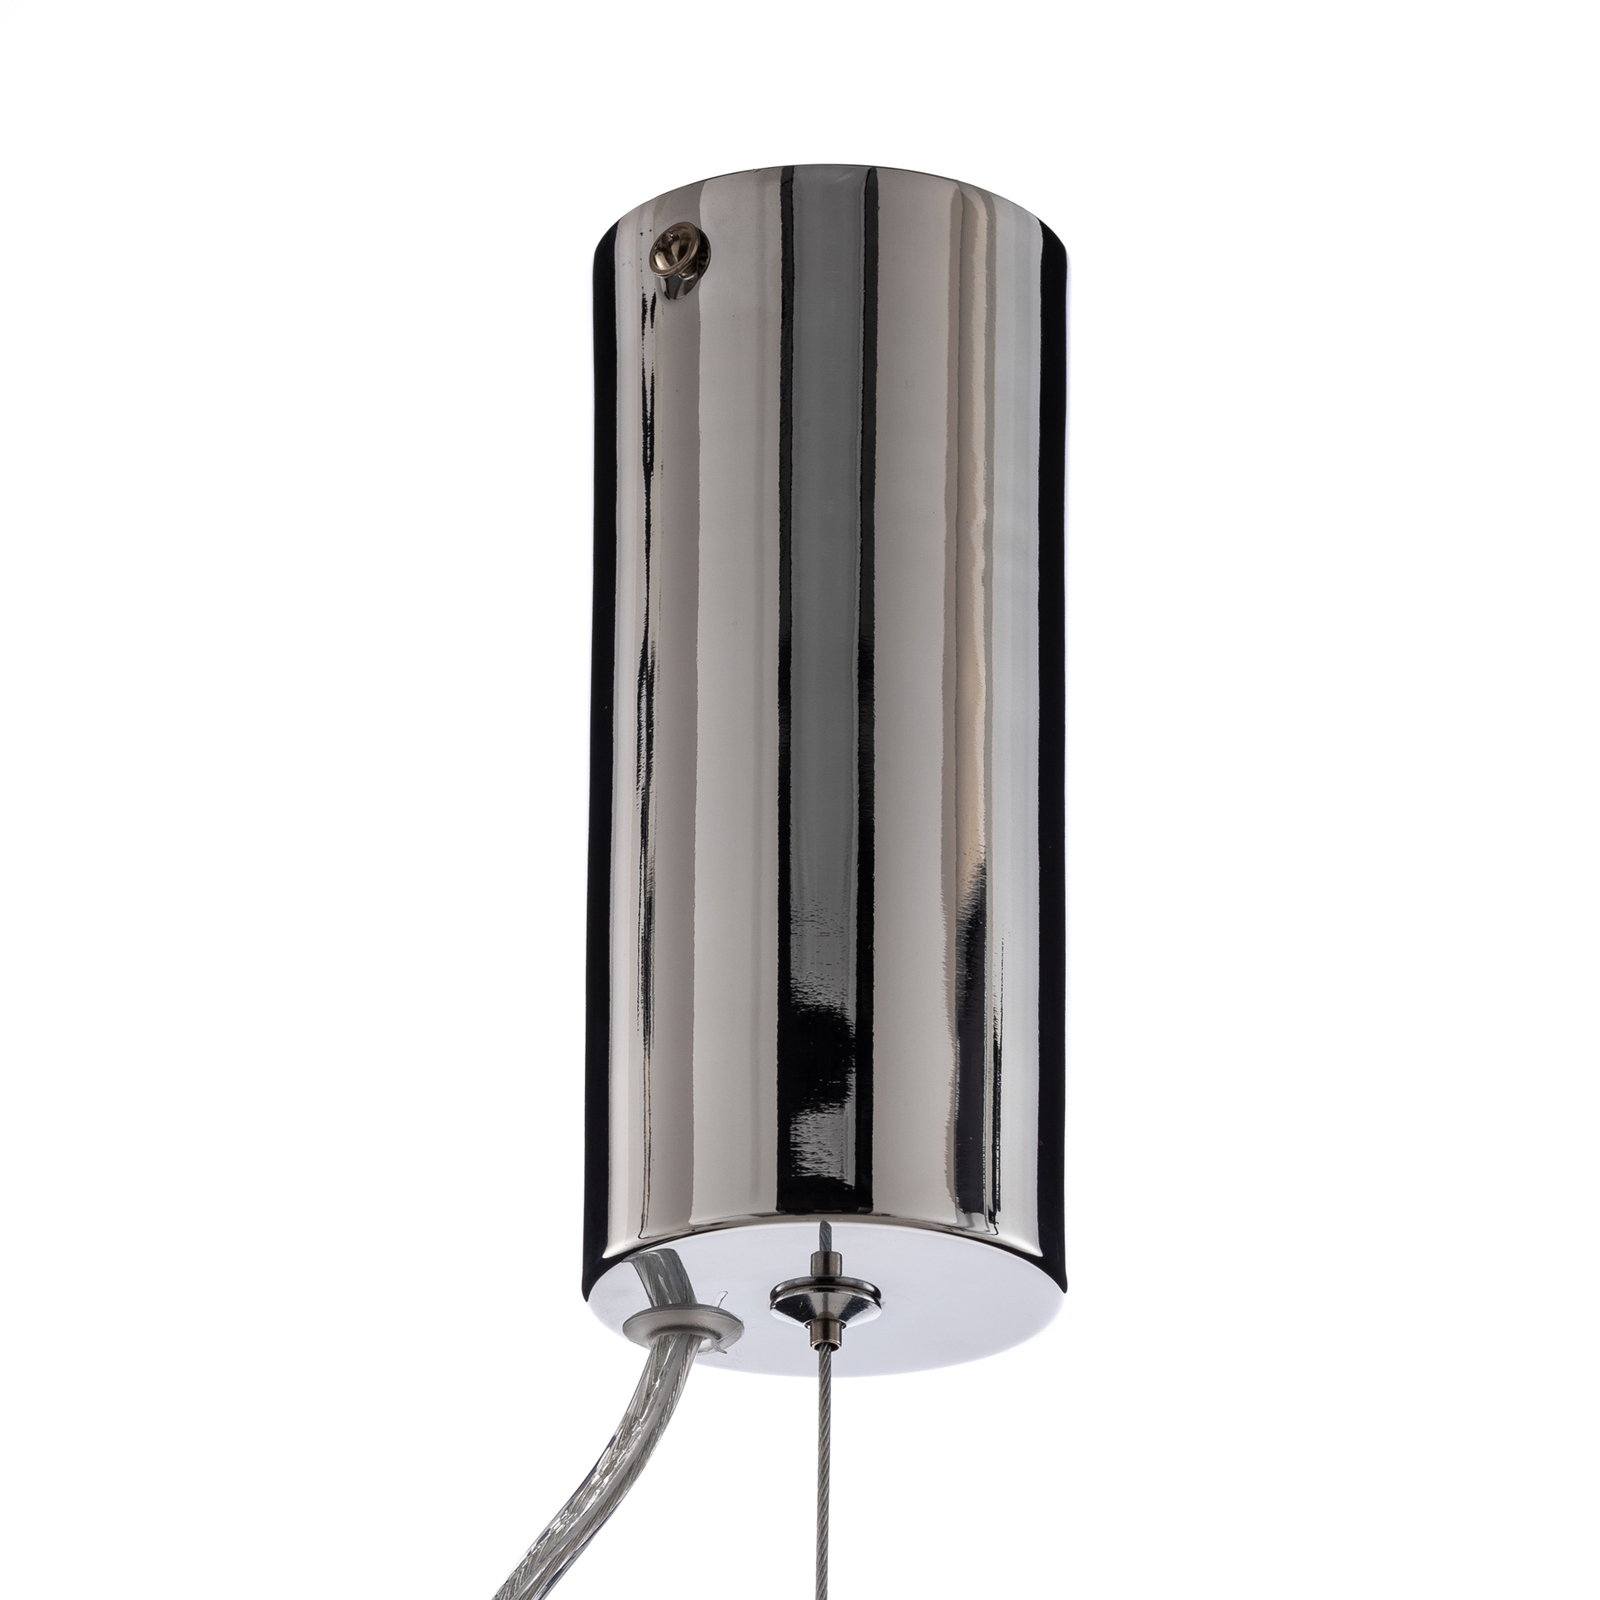 Lucande LED-Hängeleuchte Fedra, Glas, grau/weiß, Ø 17 cm